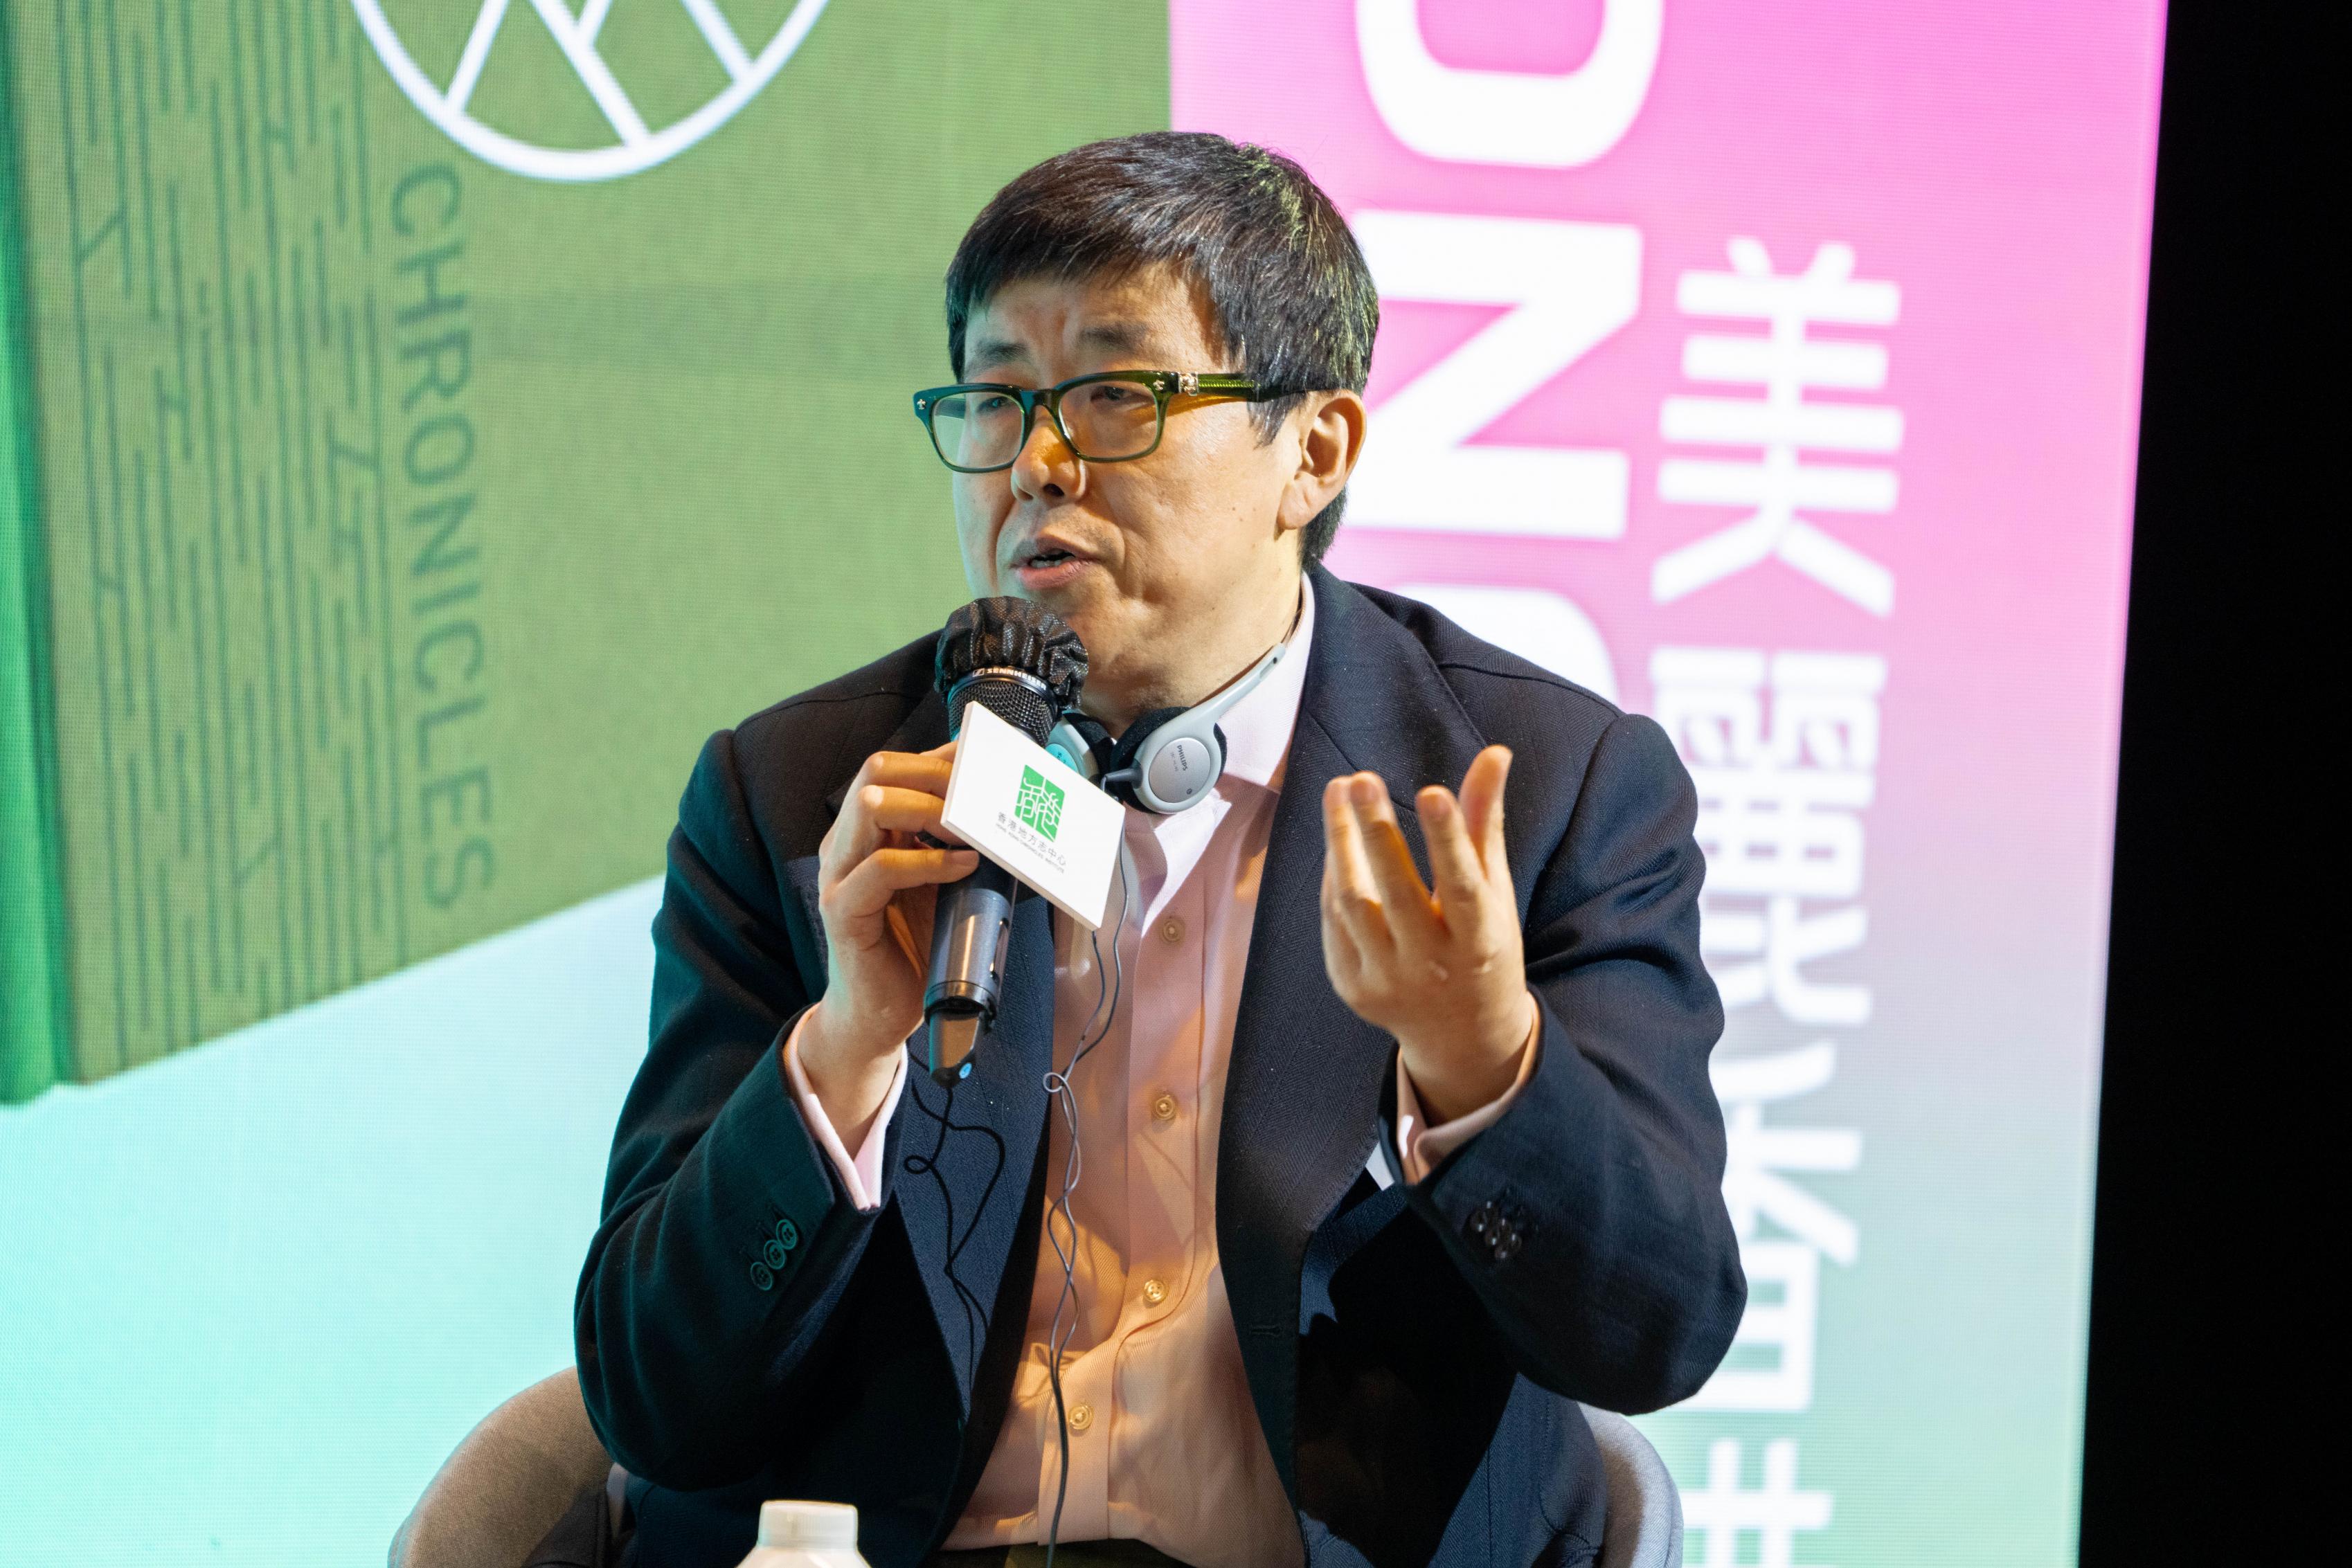 華潤置地(海外)有限公司總設計師郭曉東先生參與專題討論。 